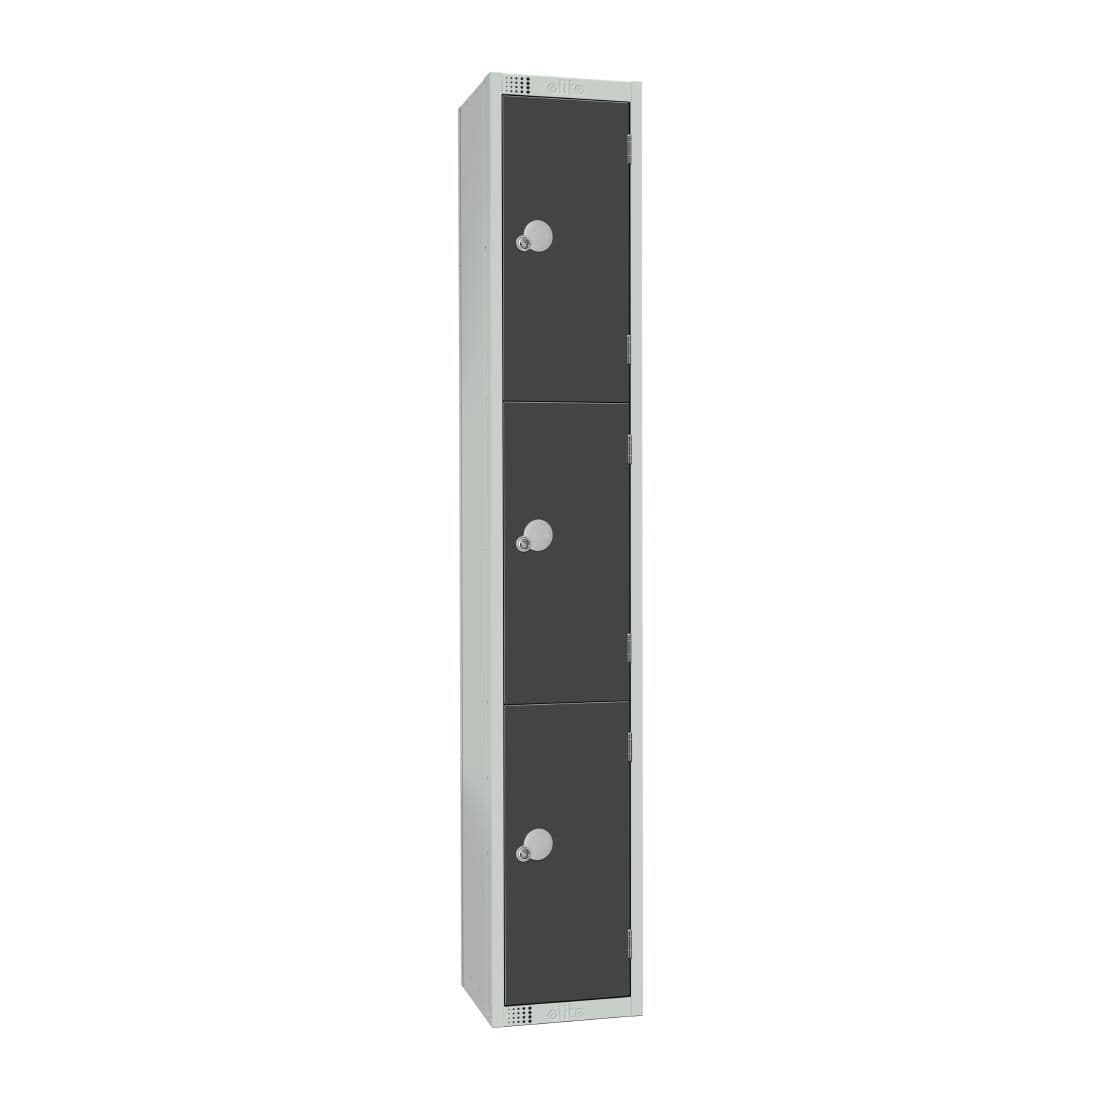 GR679-CL Elite Three Door Manual Combination Locker Locker Graphite Grey JD Catering Equipment Solutions Ltd